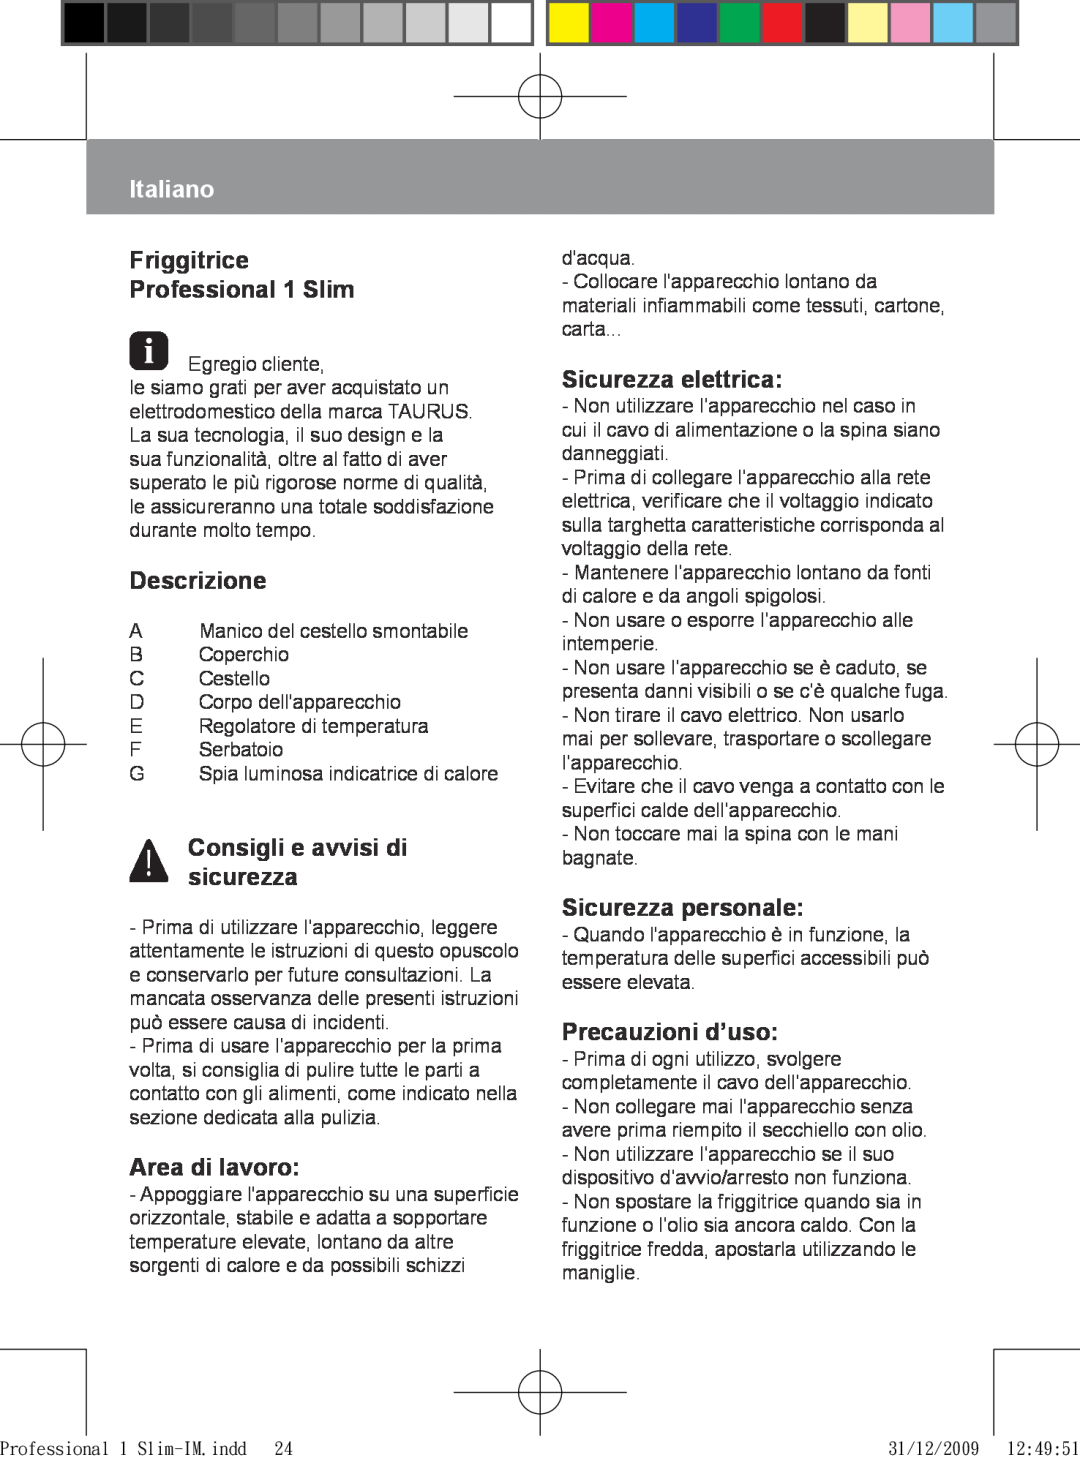 Taurus Group Italiano, Friggitrice Professional 1 Slim, Descrizione, Consigli e avvisi di sicurezza, Area di lavoro 